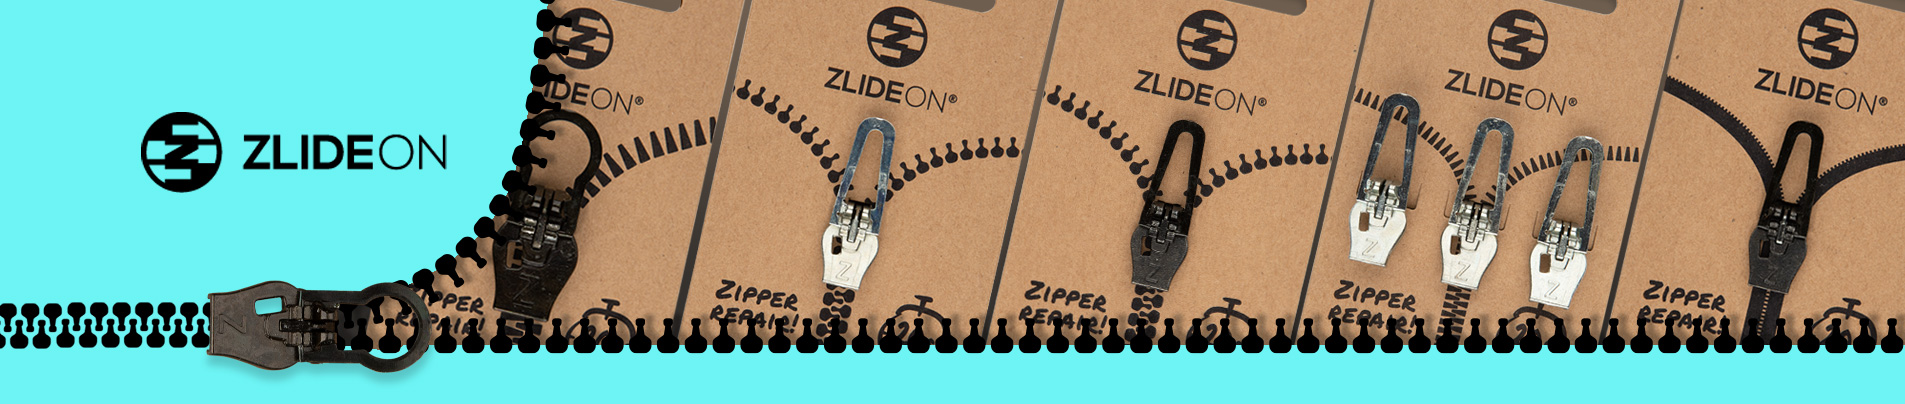  ZlideOn Zipper Pull Replacement - Black, Waterproof